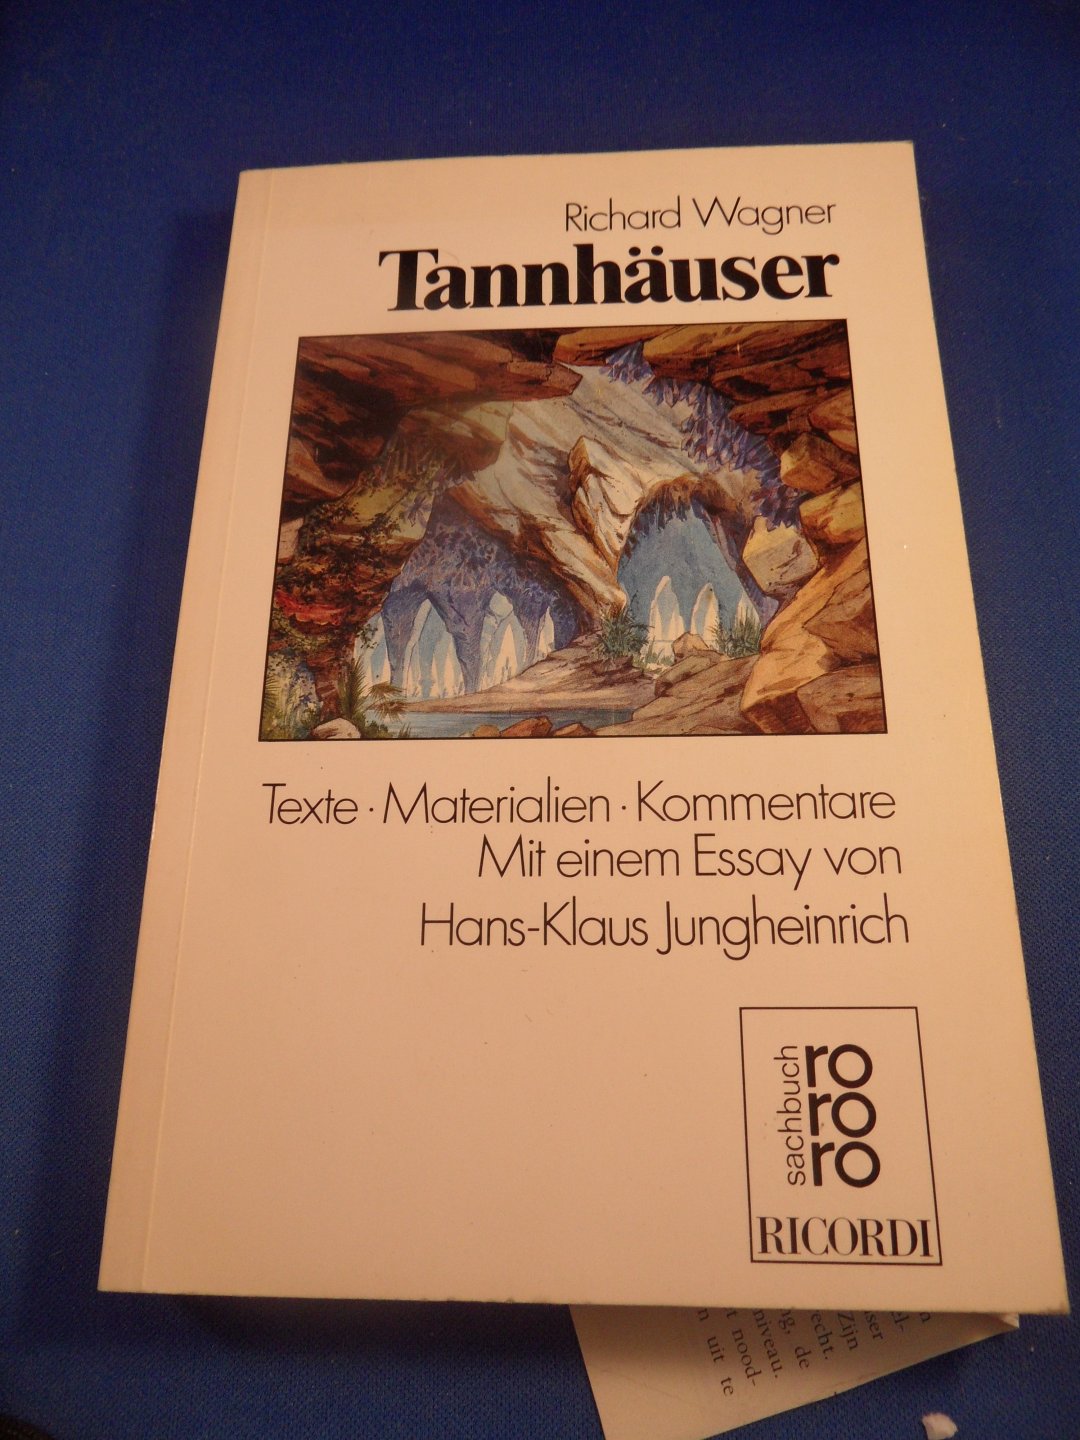 Wagner, R. - Tannhäuser. Texte. Materialien. Kommentare. Mit einem Essay von Hans-Klaus Jungheinrich. Herausgegeben von Attila Csampai und Dietmar Holland